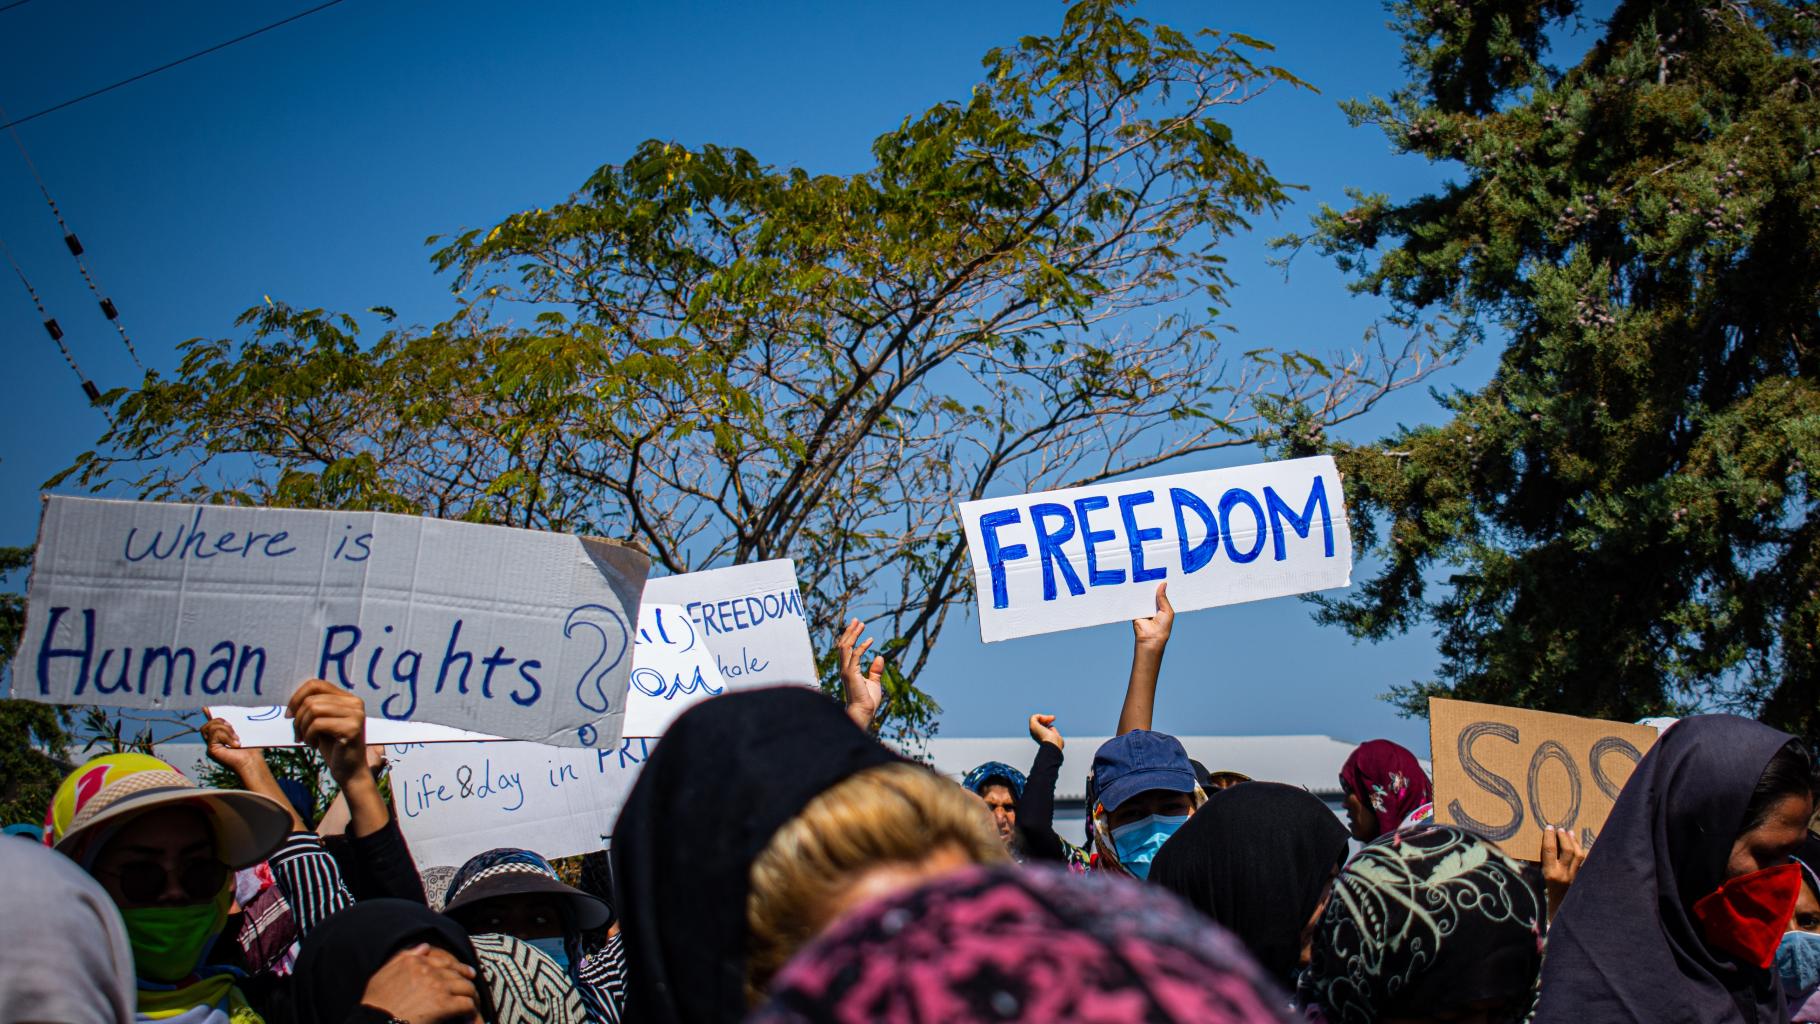 Protestierende Menschen halten Schilder hoch mit der Aufschrift "Freedom" und "Where is Human Rights?"